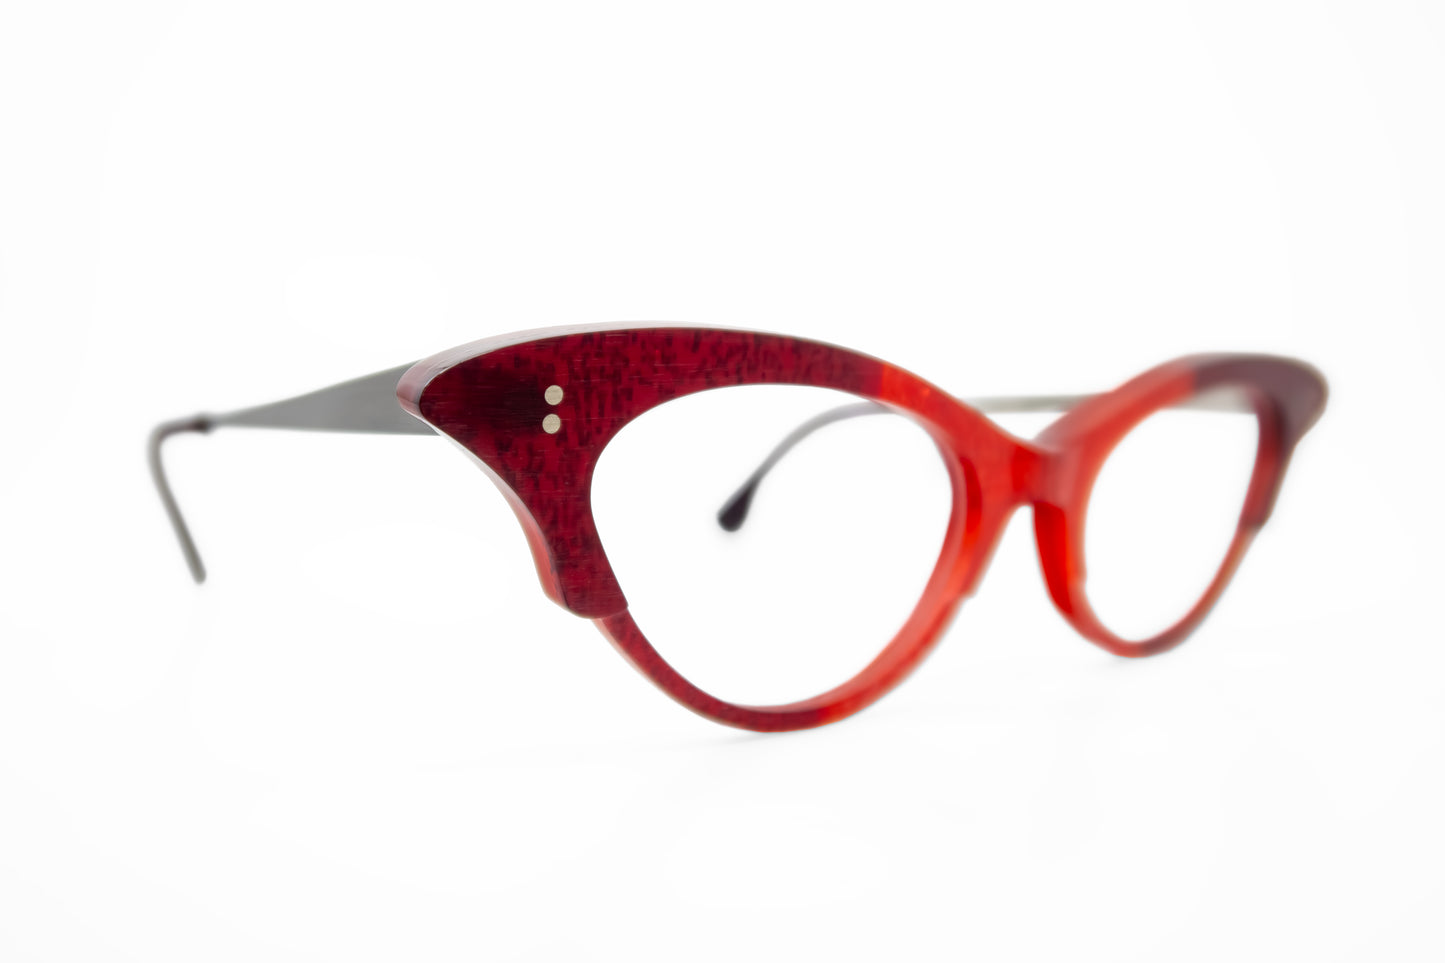 Merrill Rapp Frames Glasses